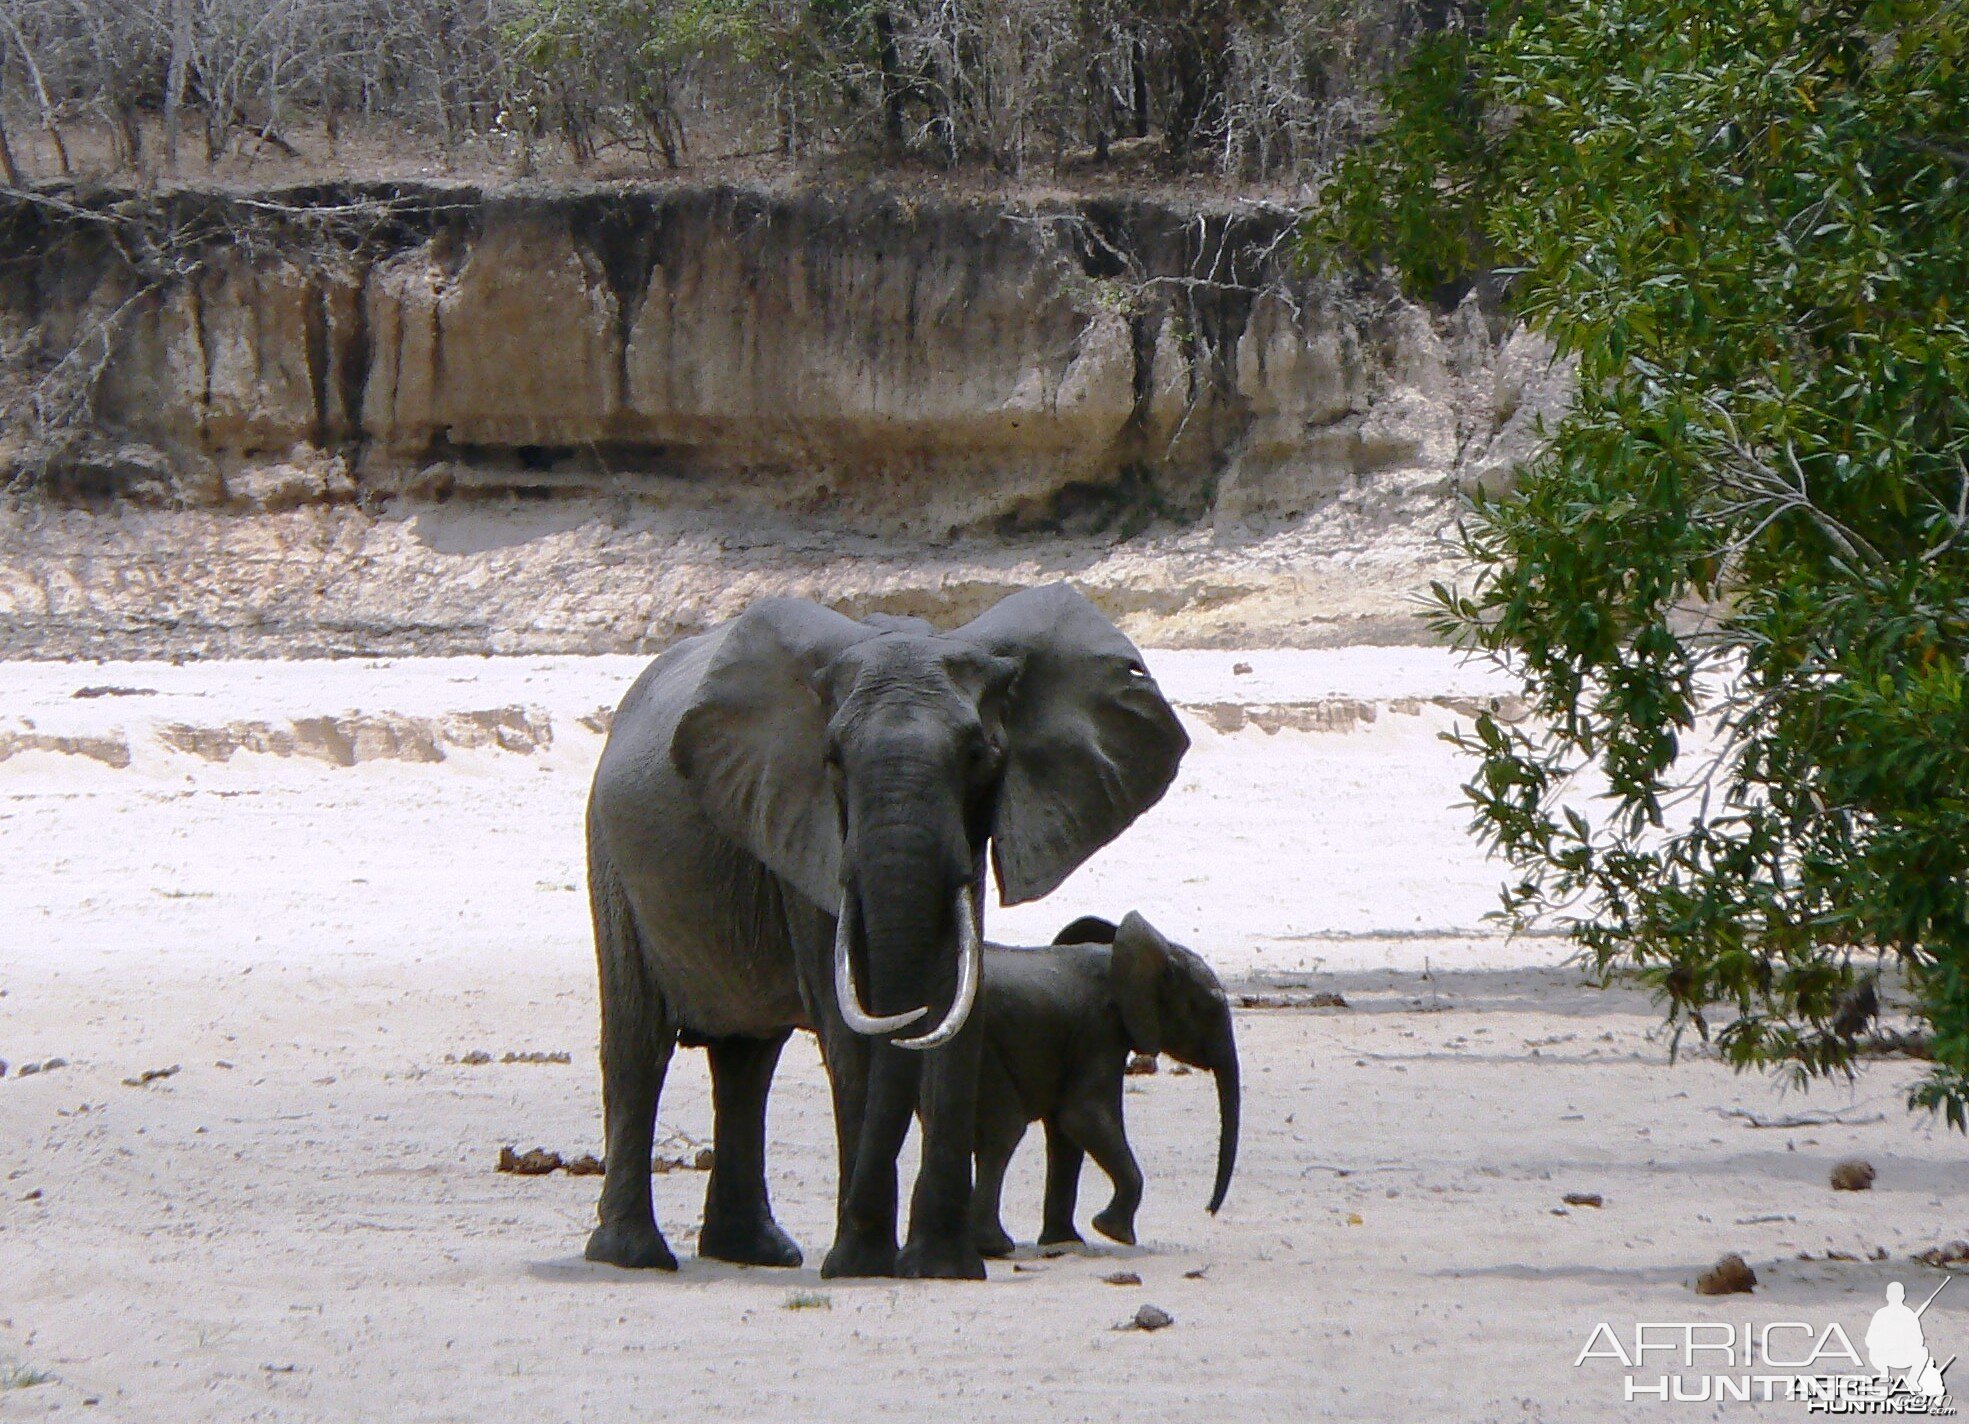 Long ivory... Elephant in Tanzania